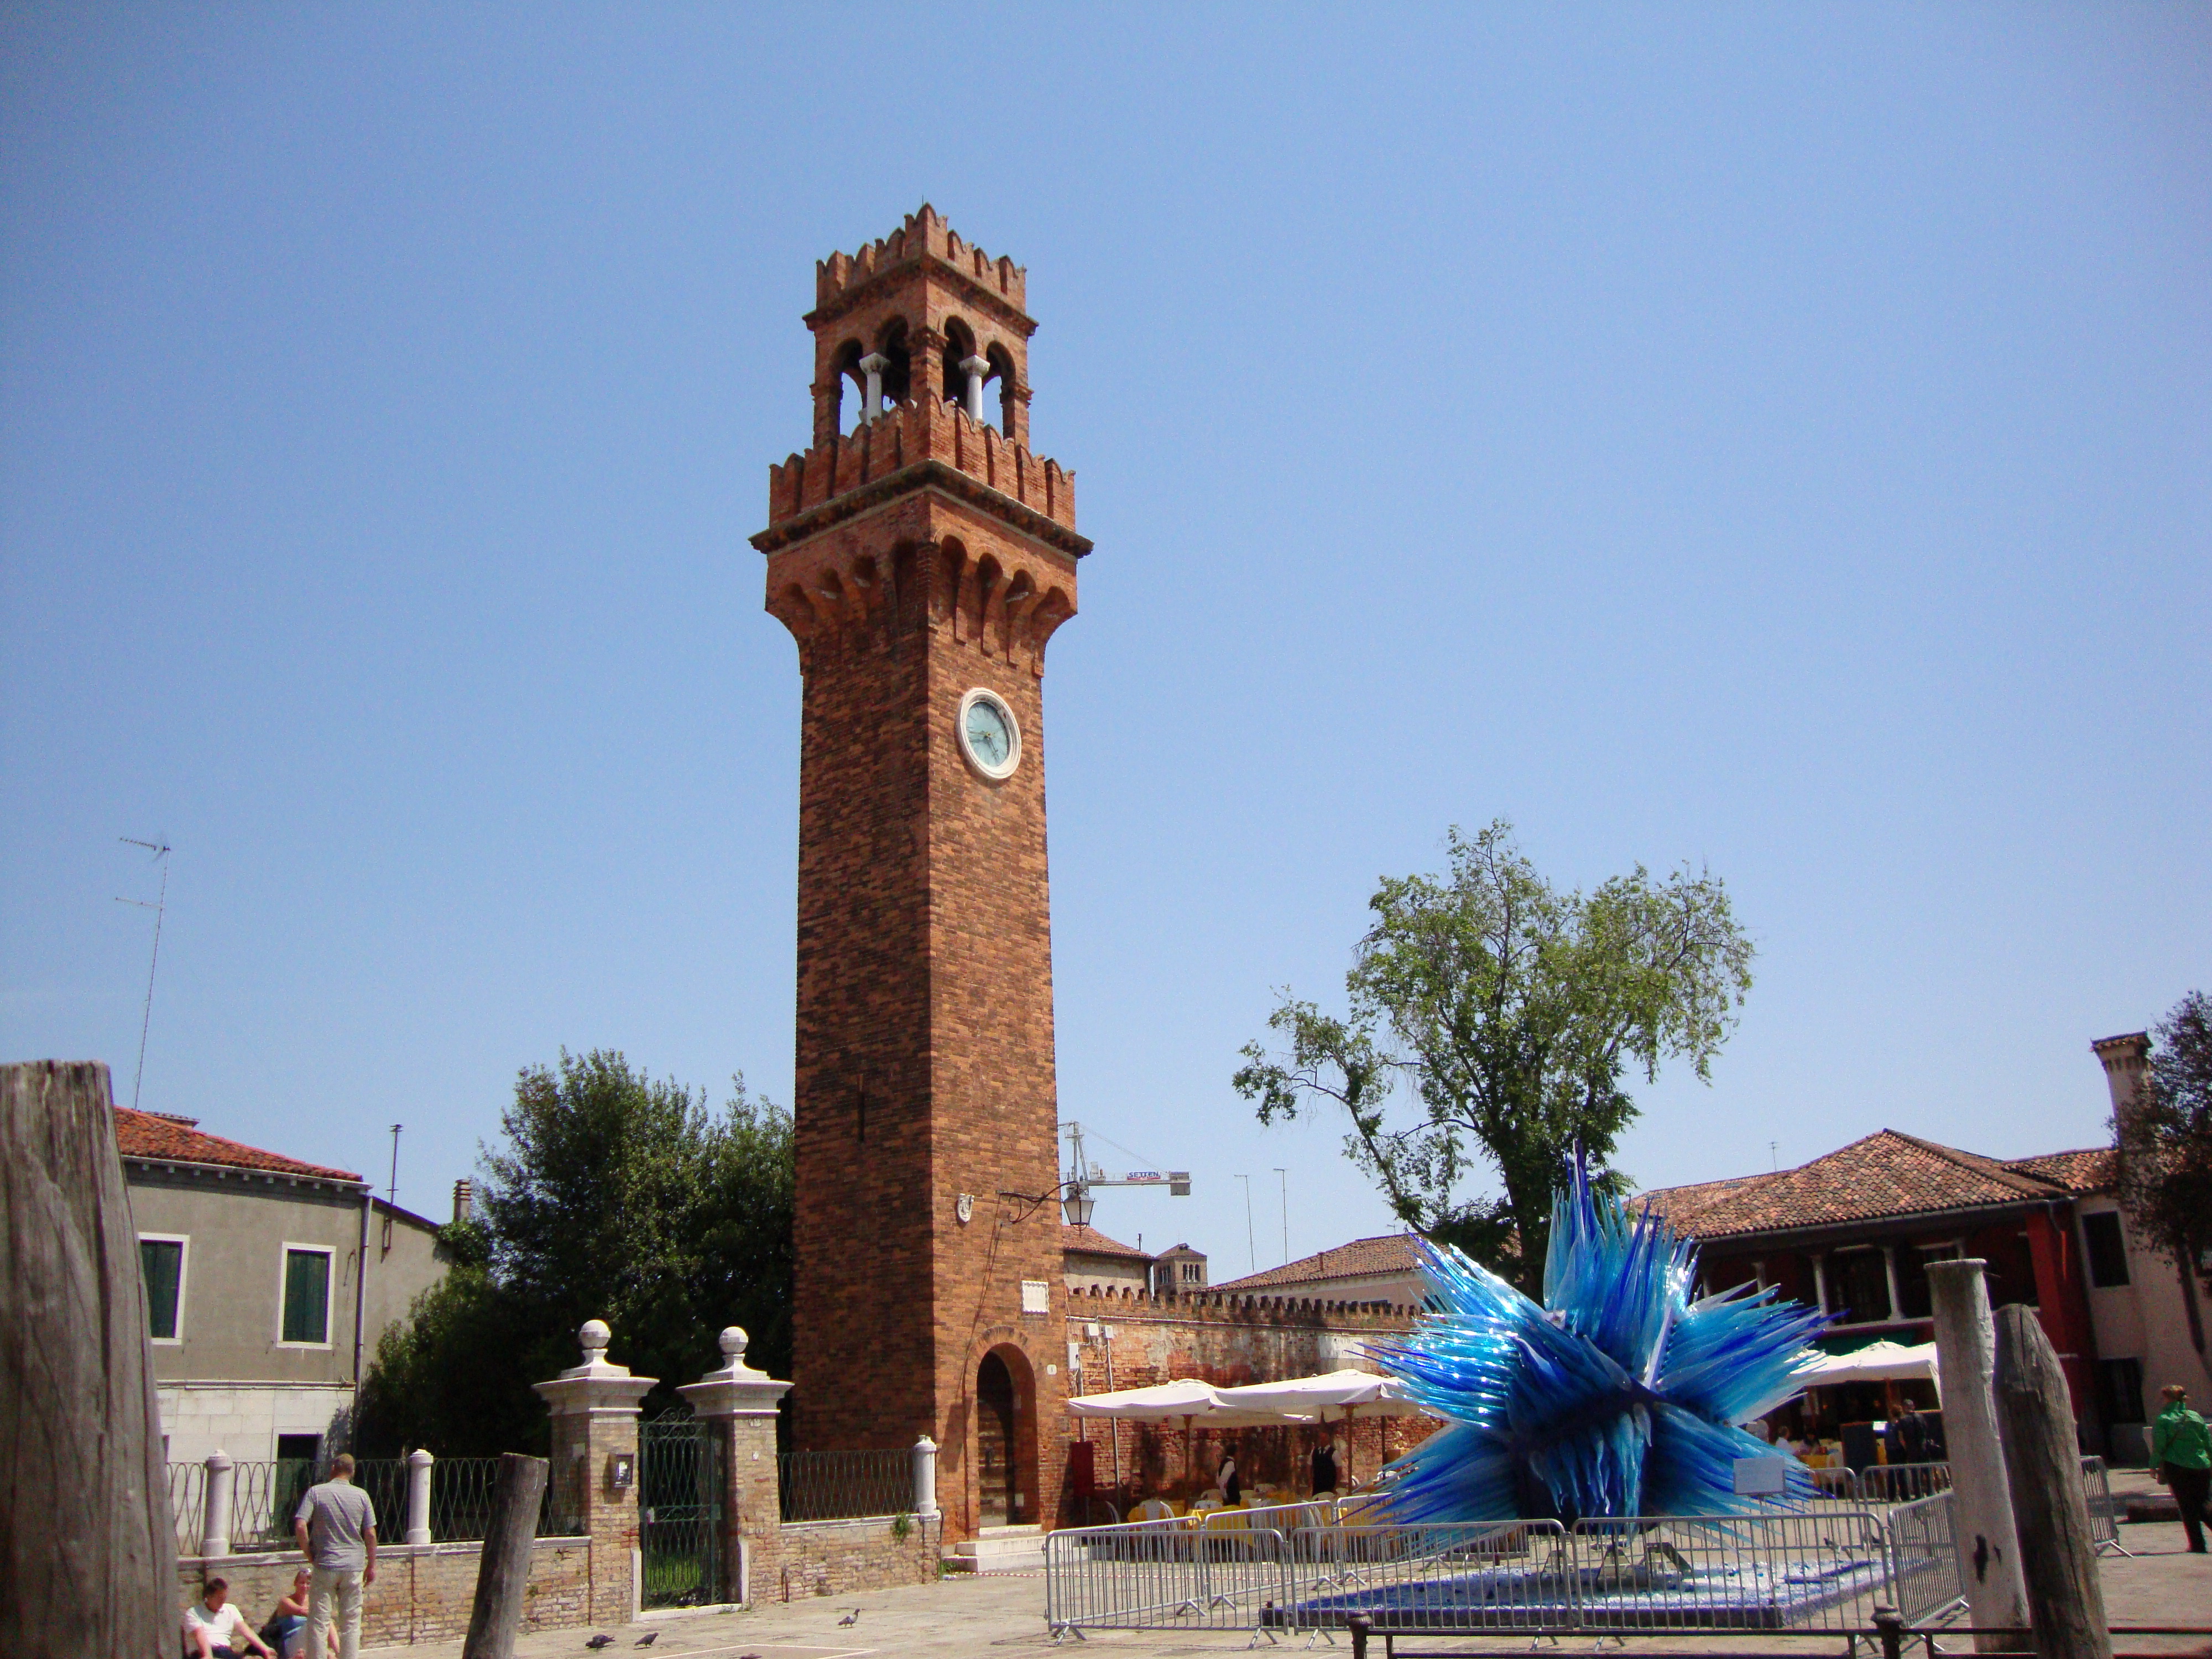 Италия часовой. Часовая башня в Италии. Италия башня с часами. Часовая башня Святого марка в Венеции. Двойная башня с часами в Италии.